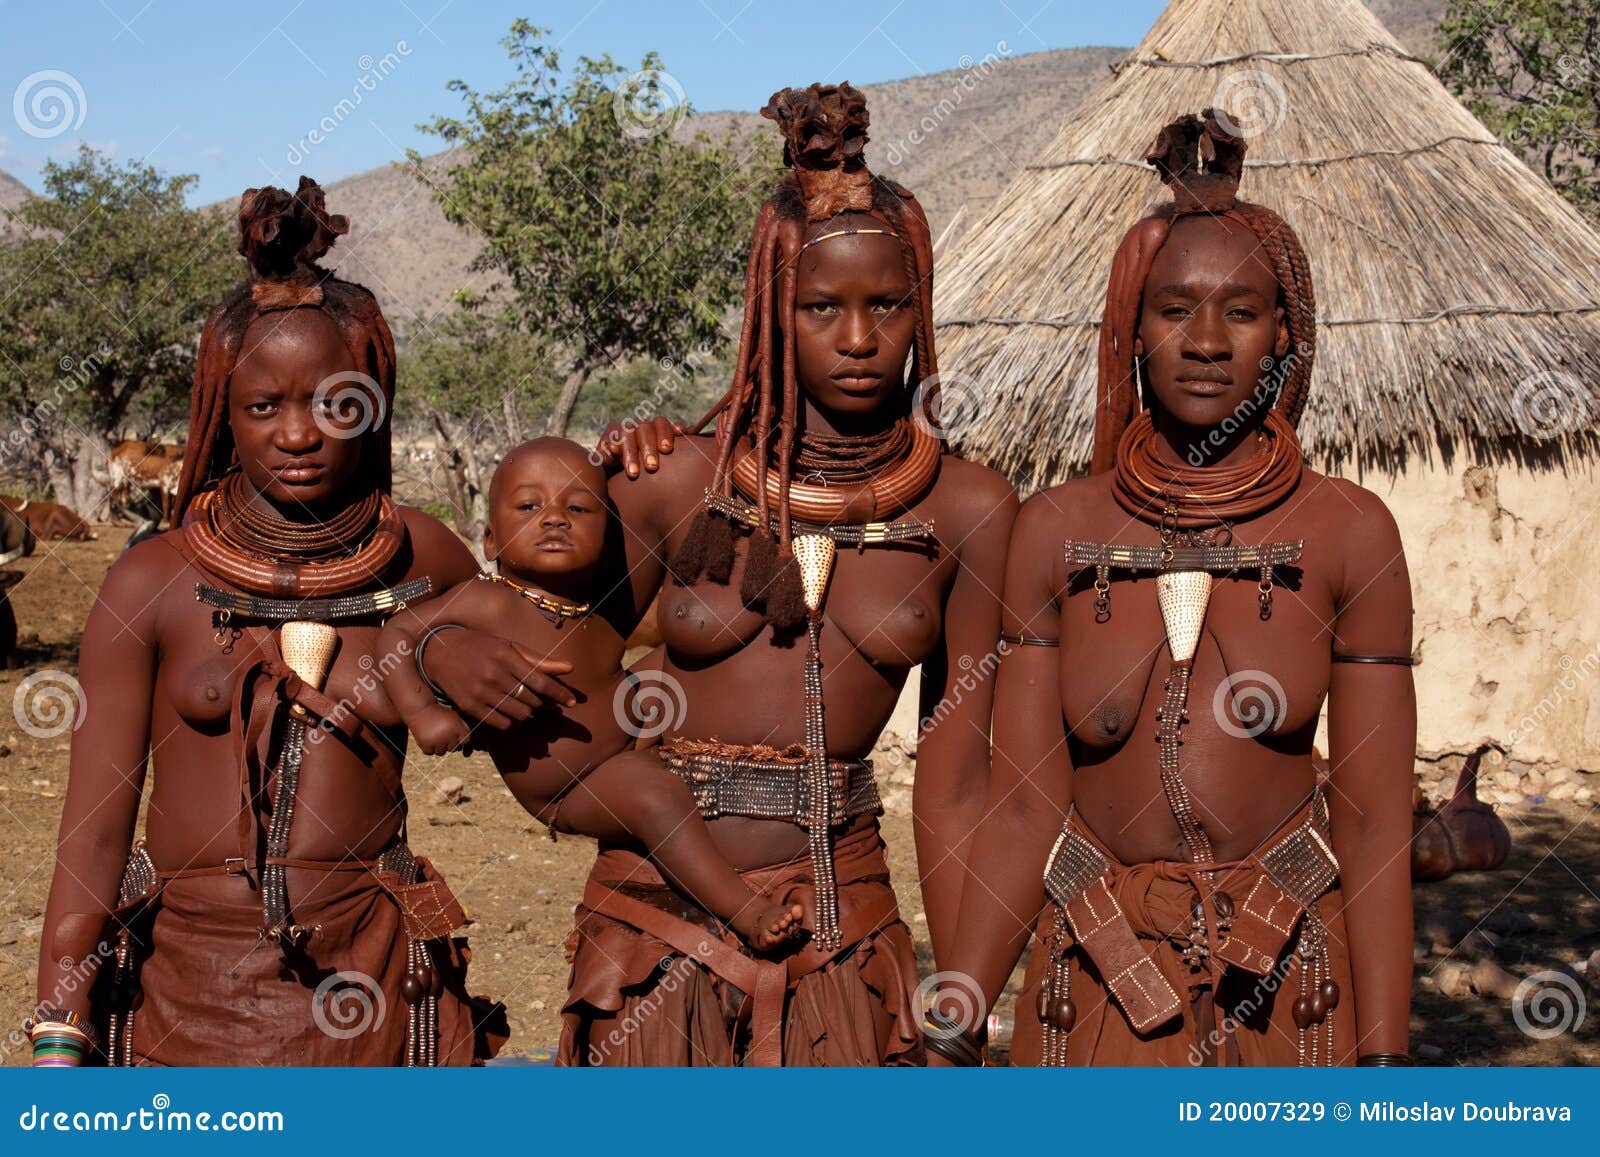 Celeb Nude Afrikanische Stamm Sex HD